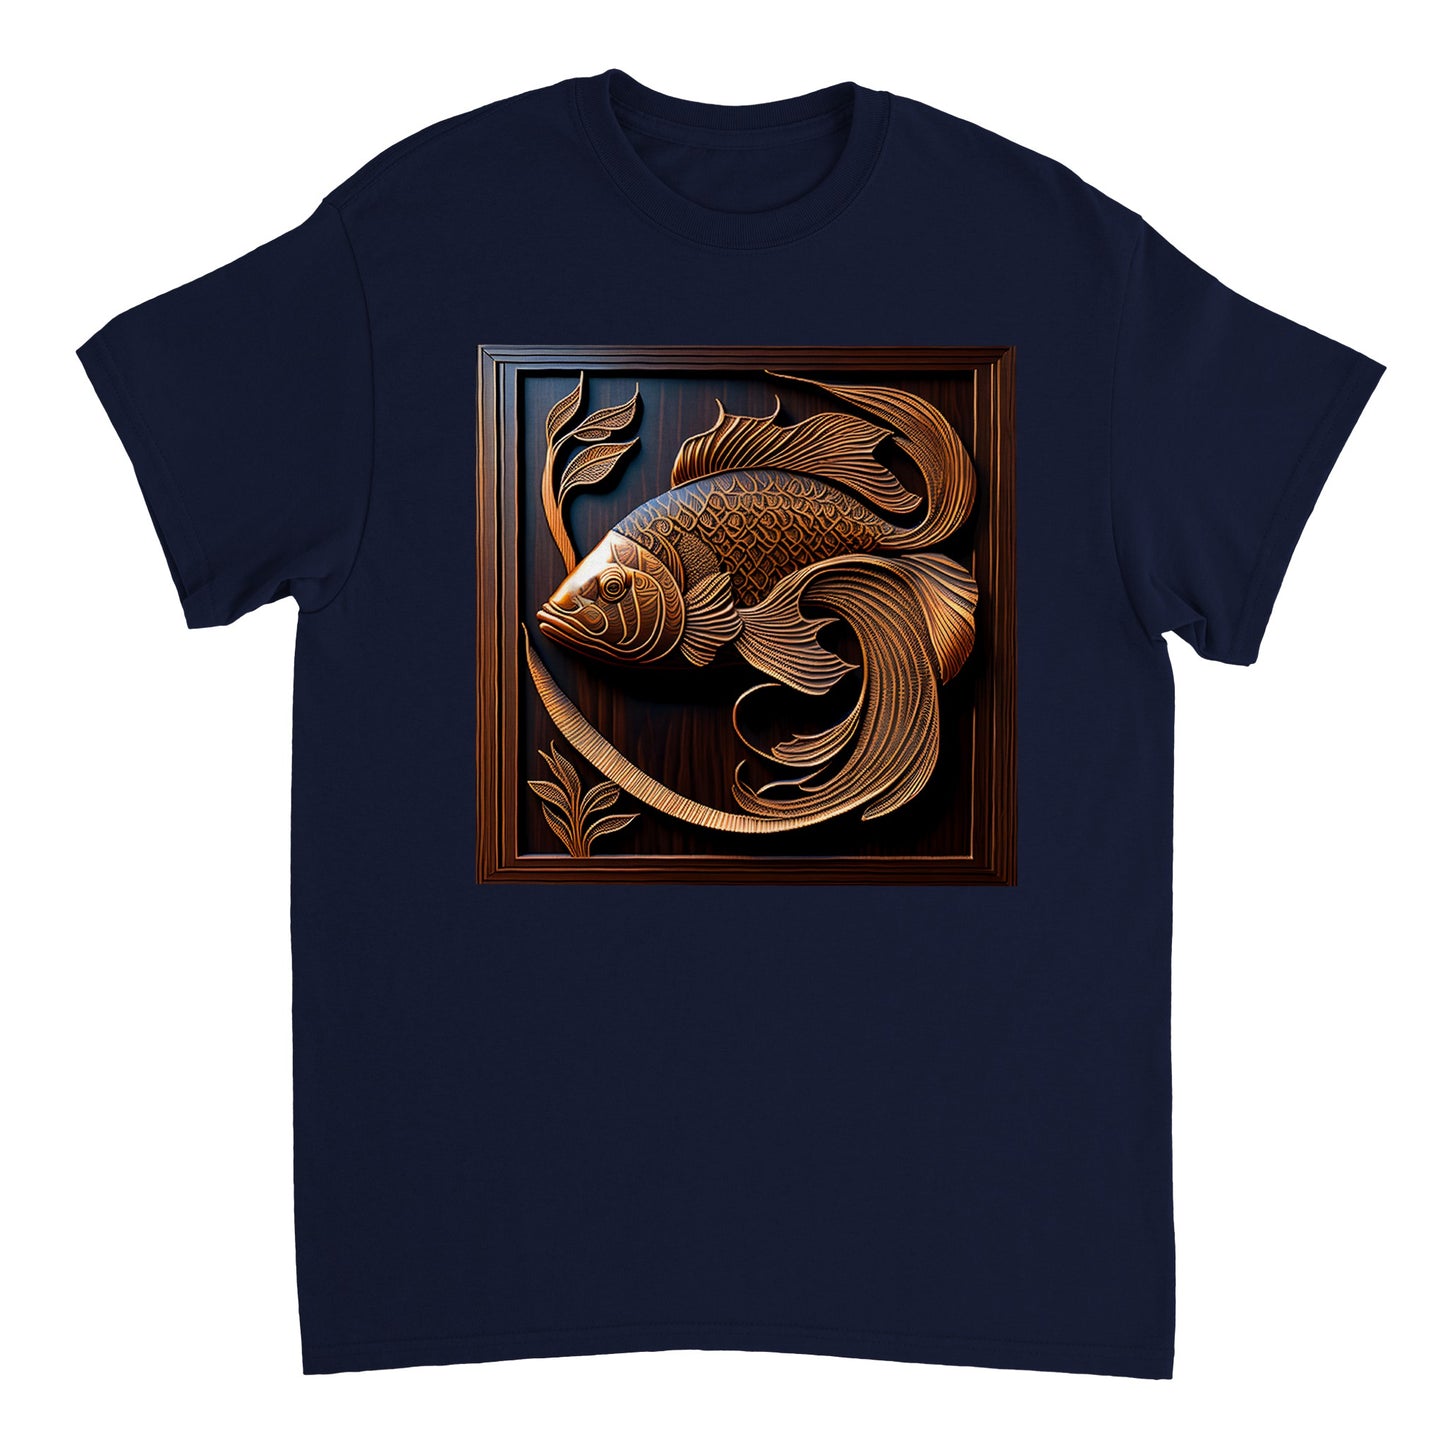 3D Wooden Animal Art - Heavyweight Unisex Crewneck T-shirt 61